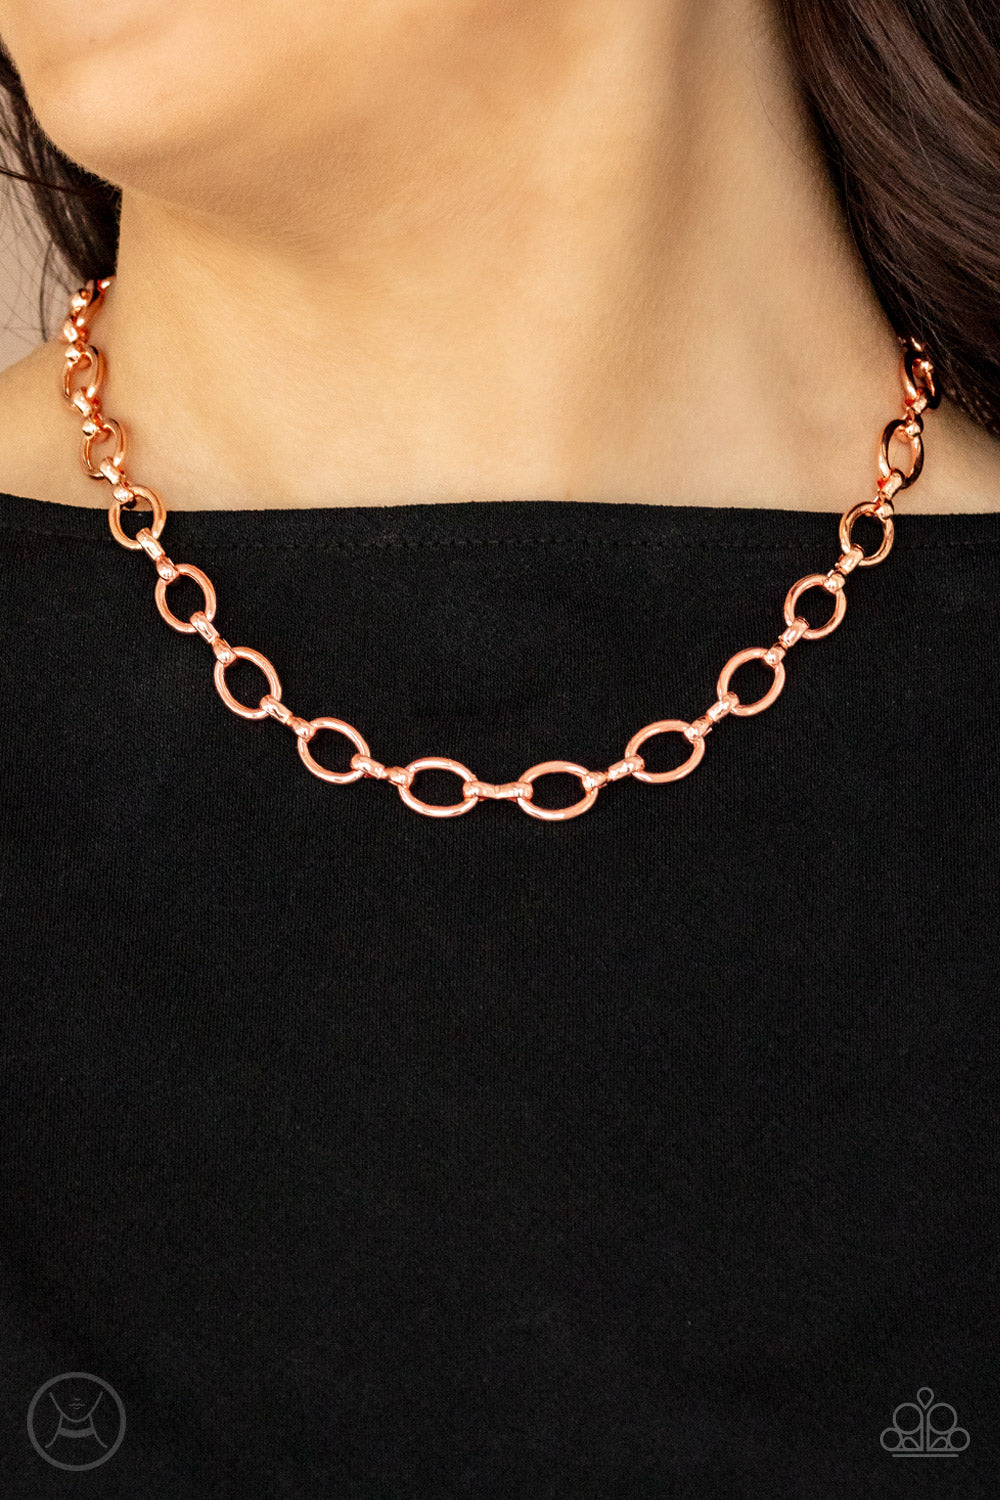 Craveable Couture - Copper